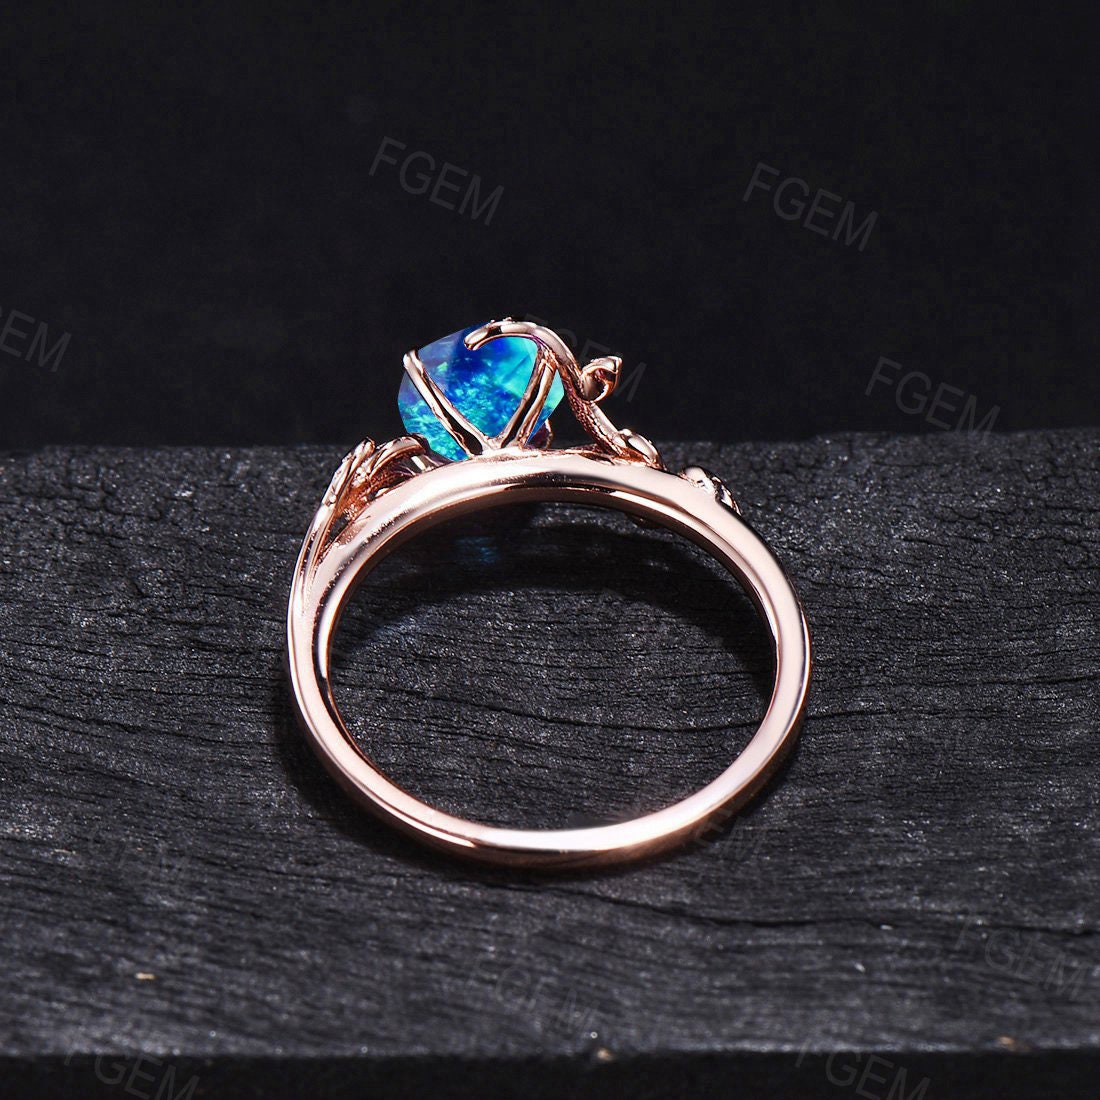 Sterling Silver Blue Opal Ring Fire Opal Jewelry 1.5ct Oval Cut Dainty